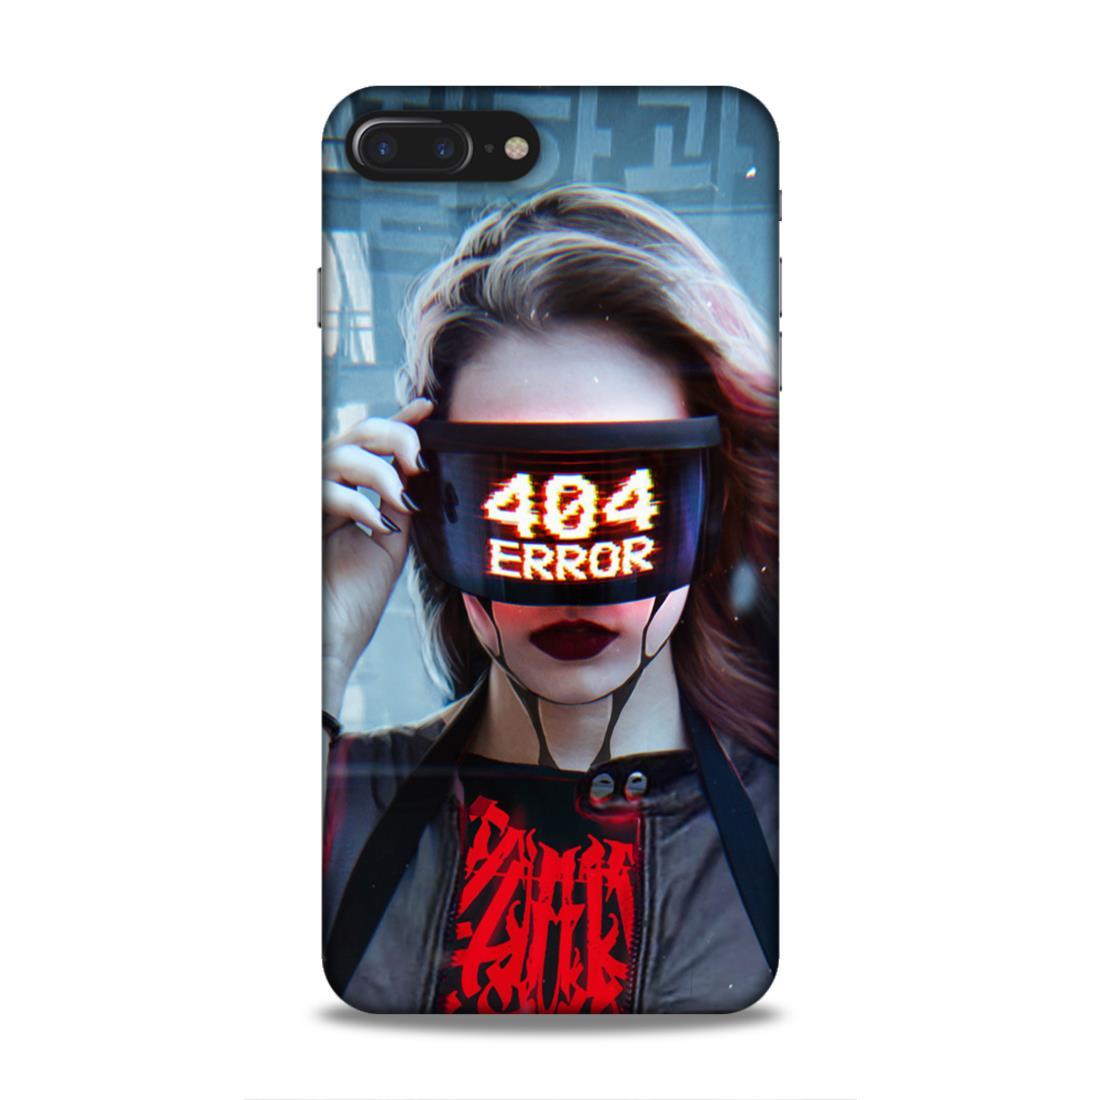 404 Error iPhone 8 Plus Phone Cover